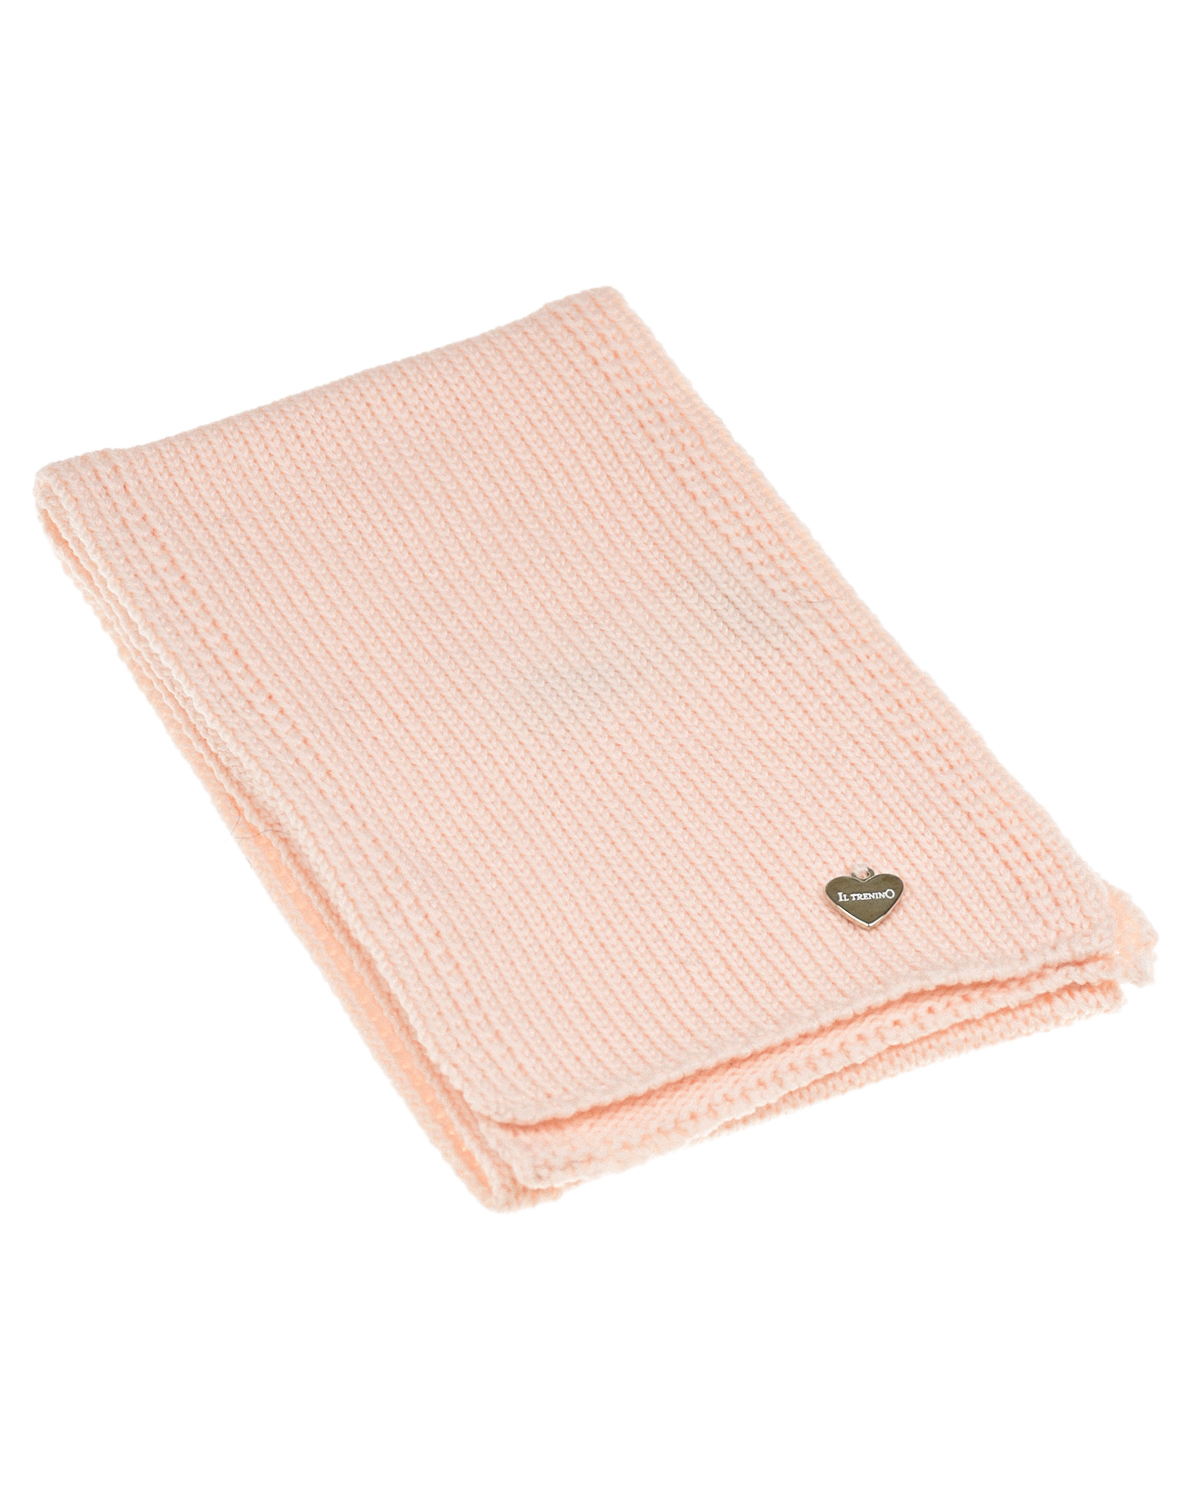 Розовый базовый шарф, 88x13 см Il Trenino детский, размер unica